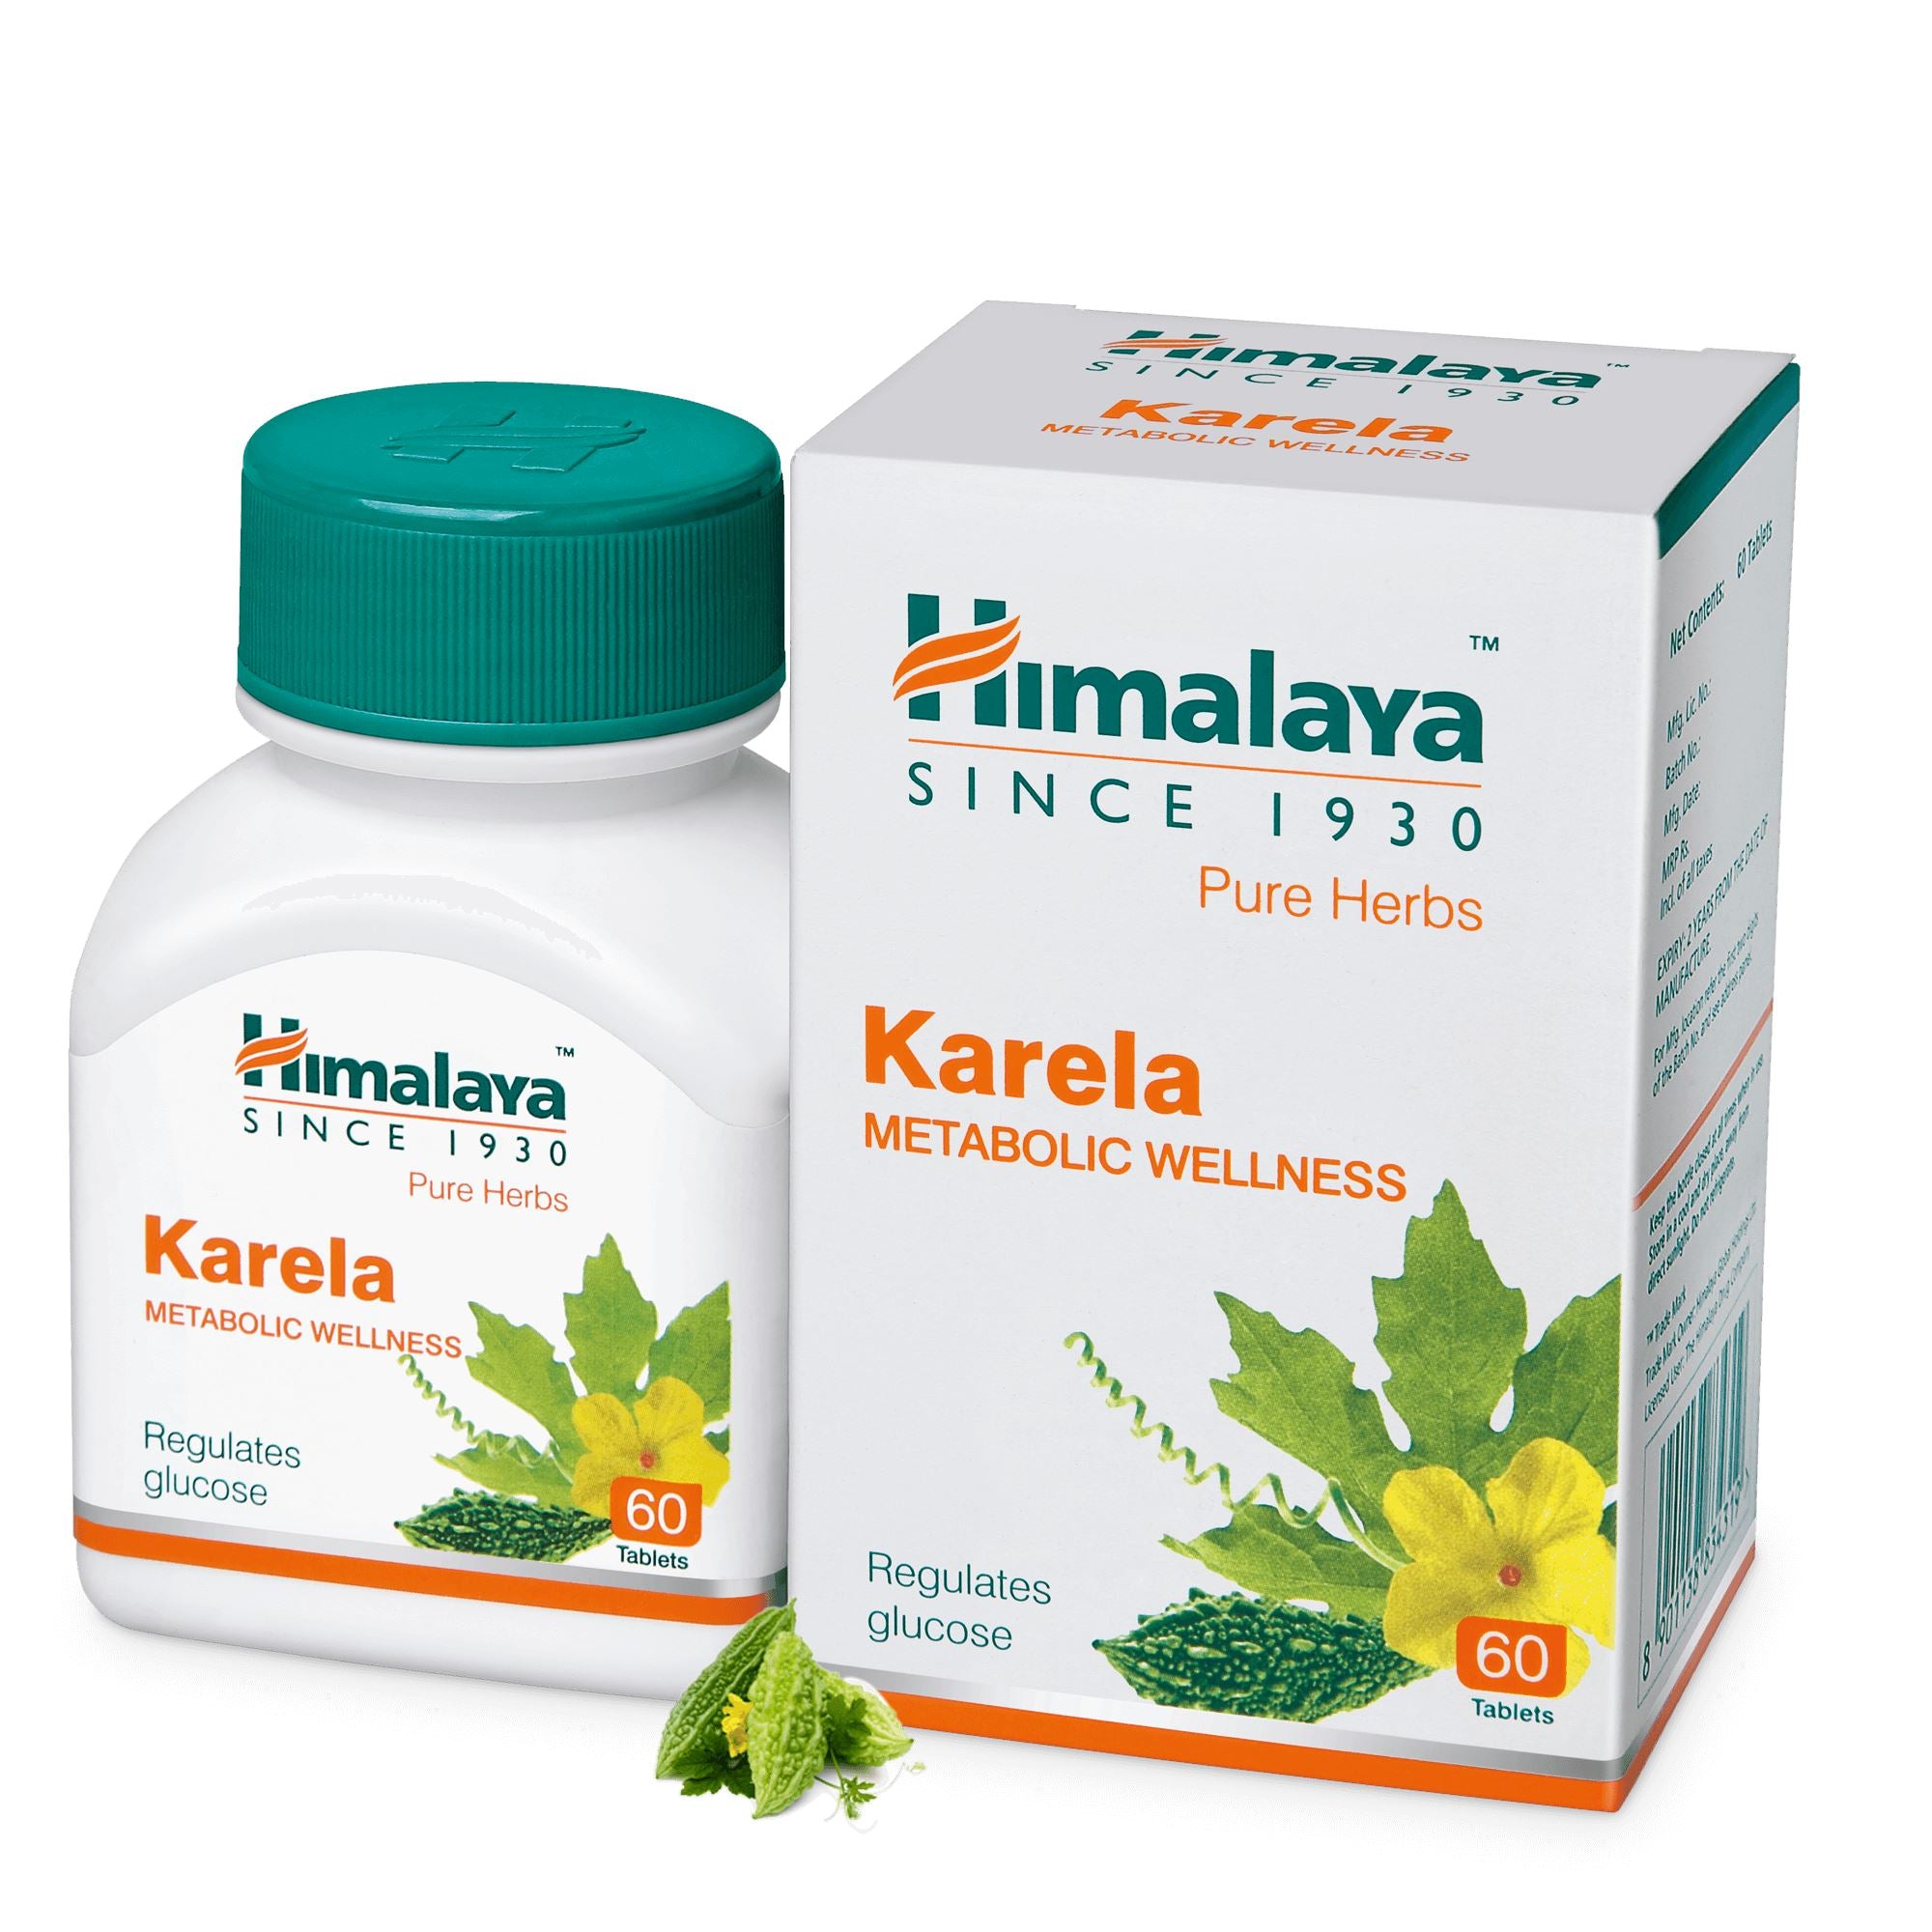 Himalaya Karela - Regulates glucose